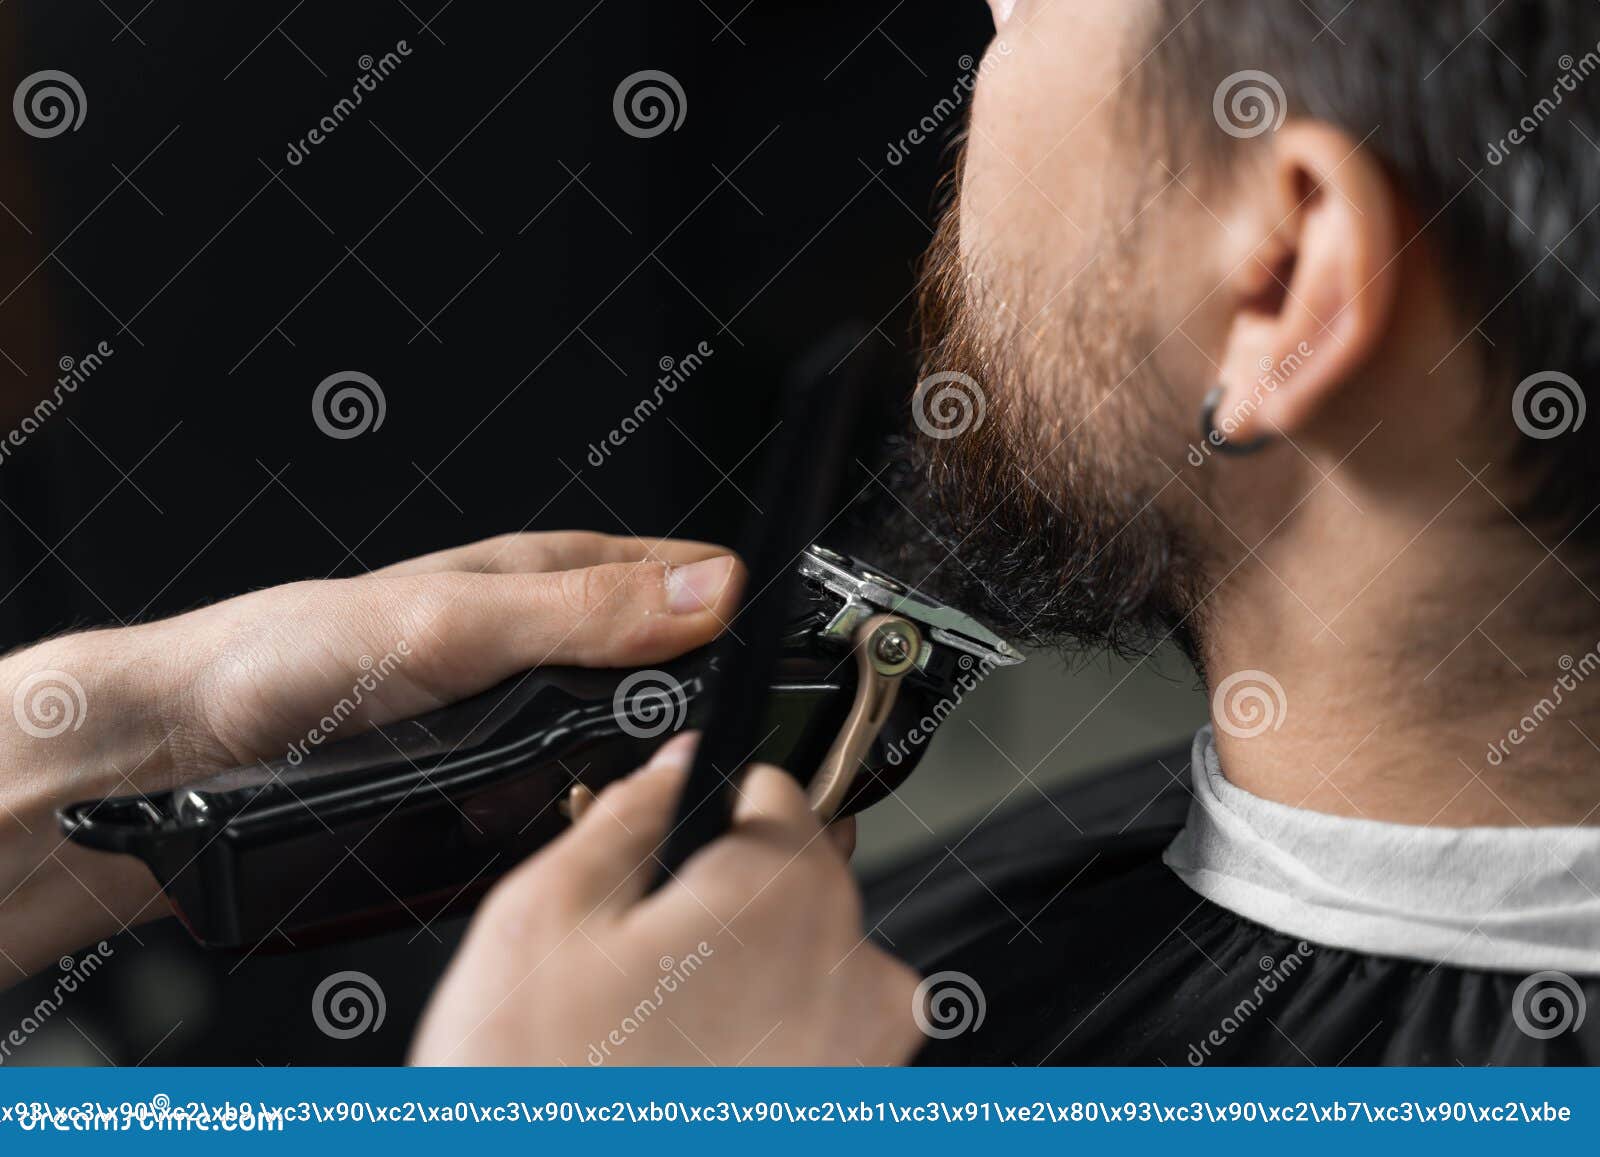 理发店发型男士图片大全-理发店发型男士高清图片下载-觅知网